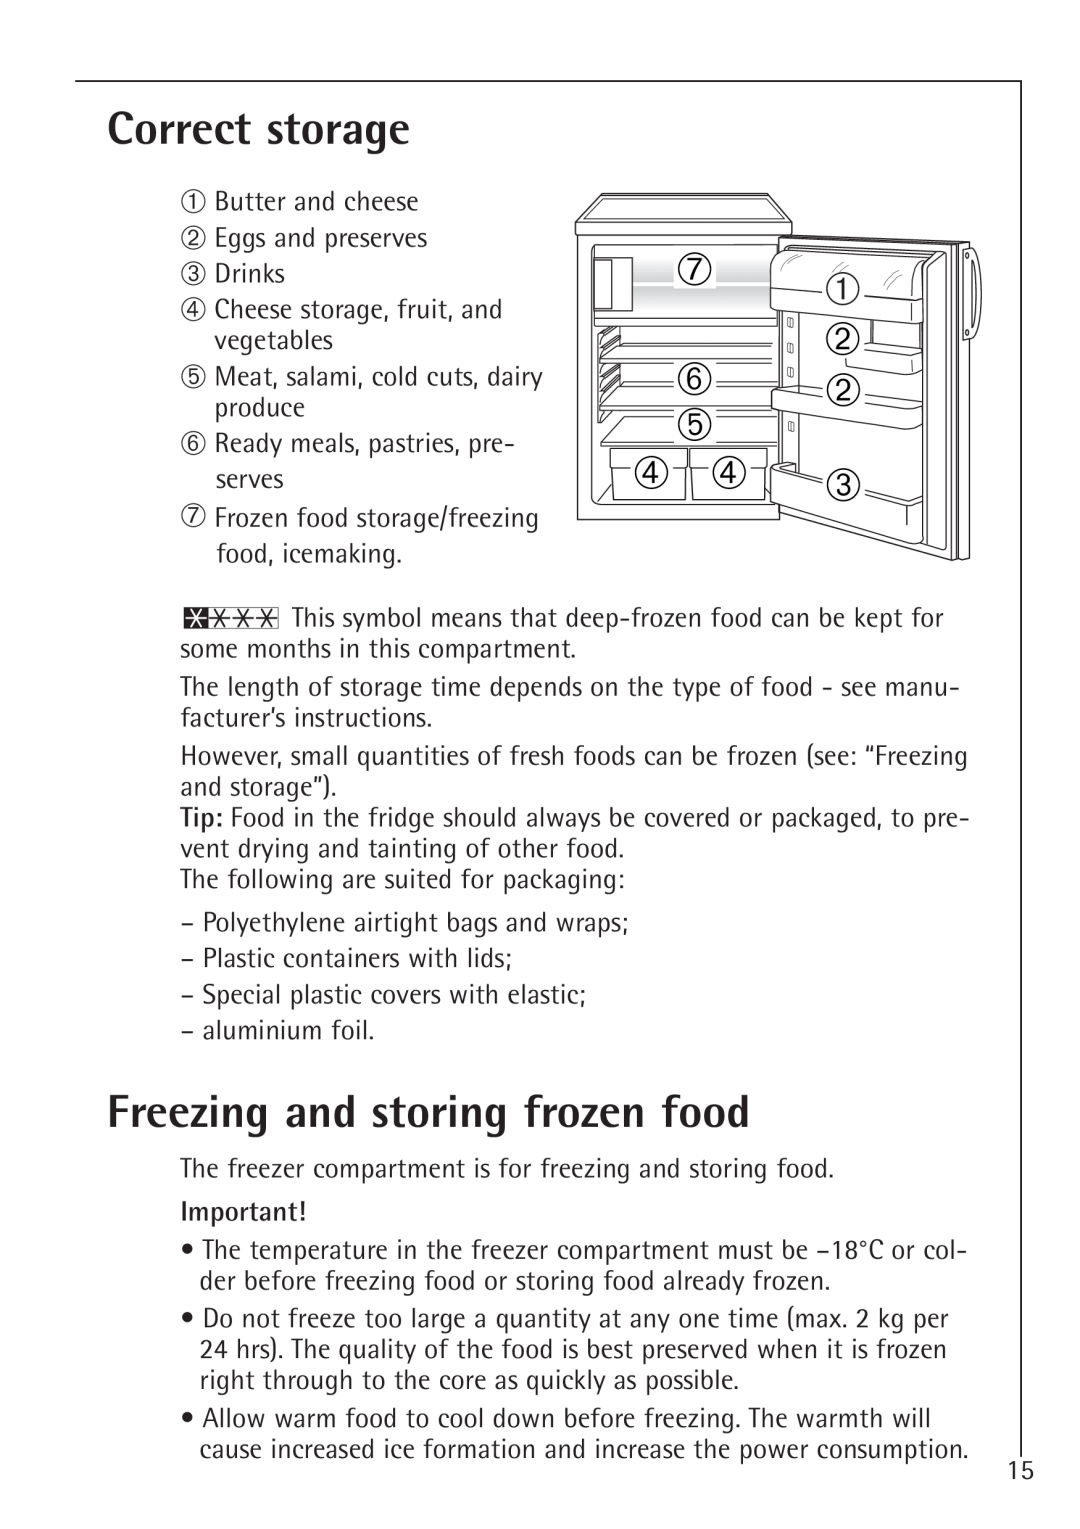 AEG 1450-7 TK manual Correct storage, ➁ ➁ ➂, Freezing and storing frozen food 